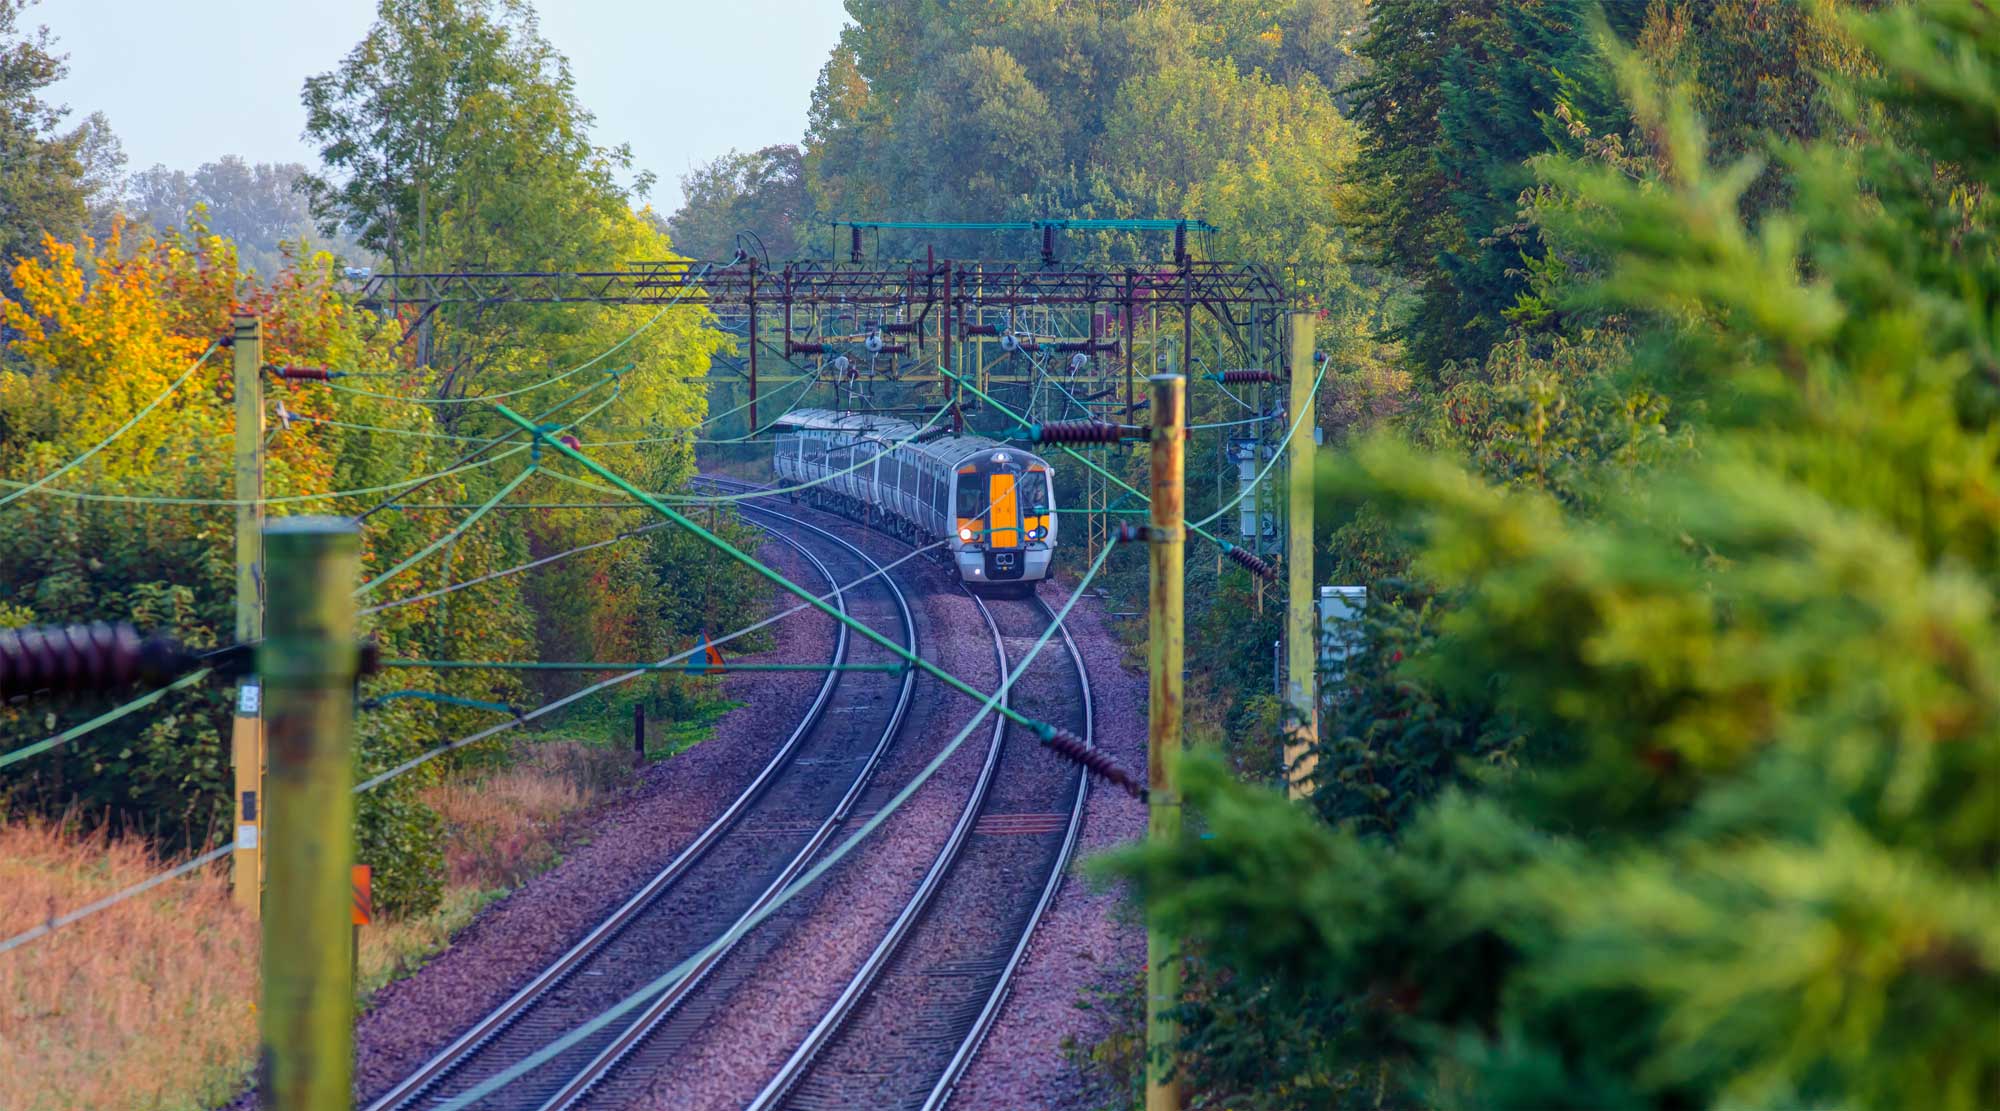 Trem de passageiros em movimento atravessando o campo durante o outono em Londres